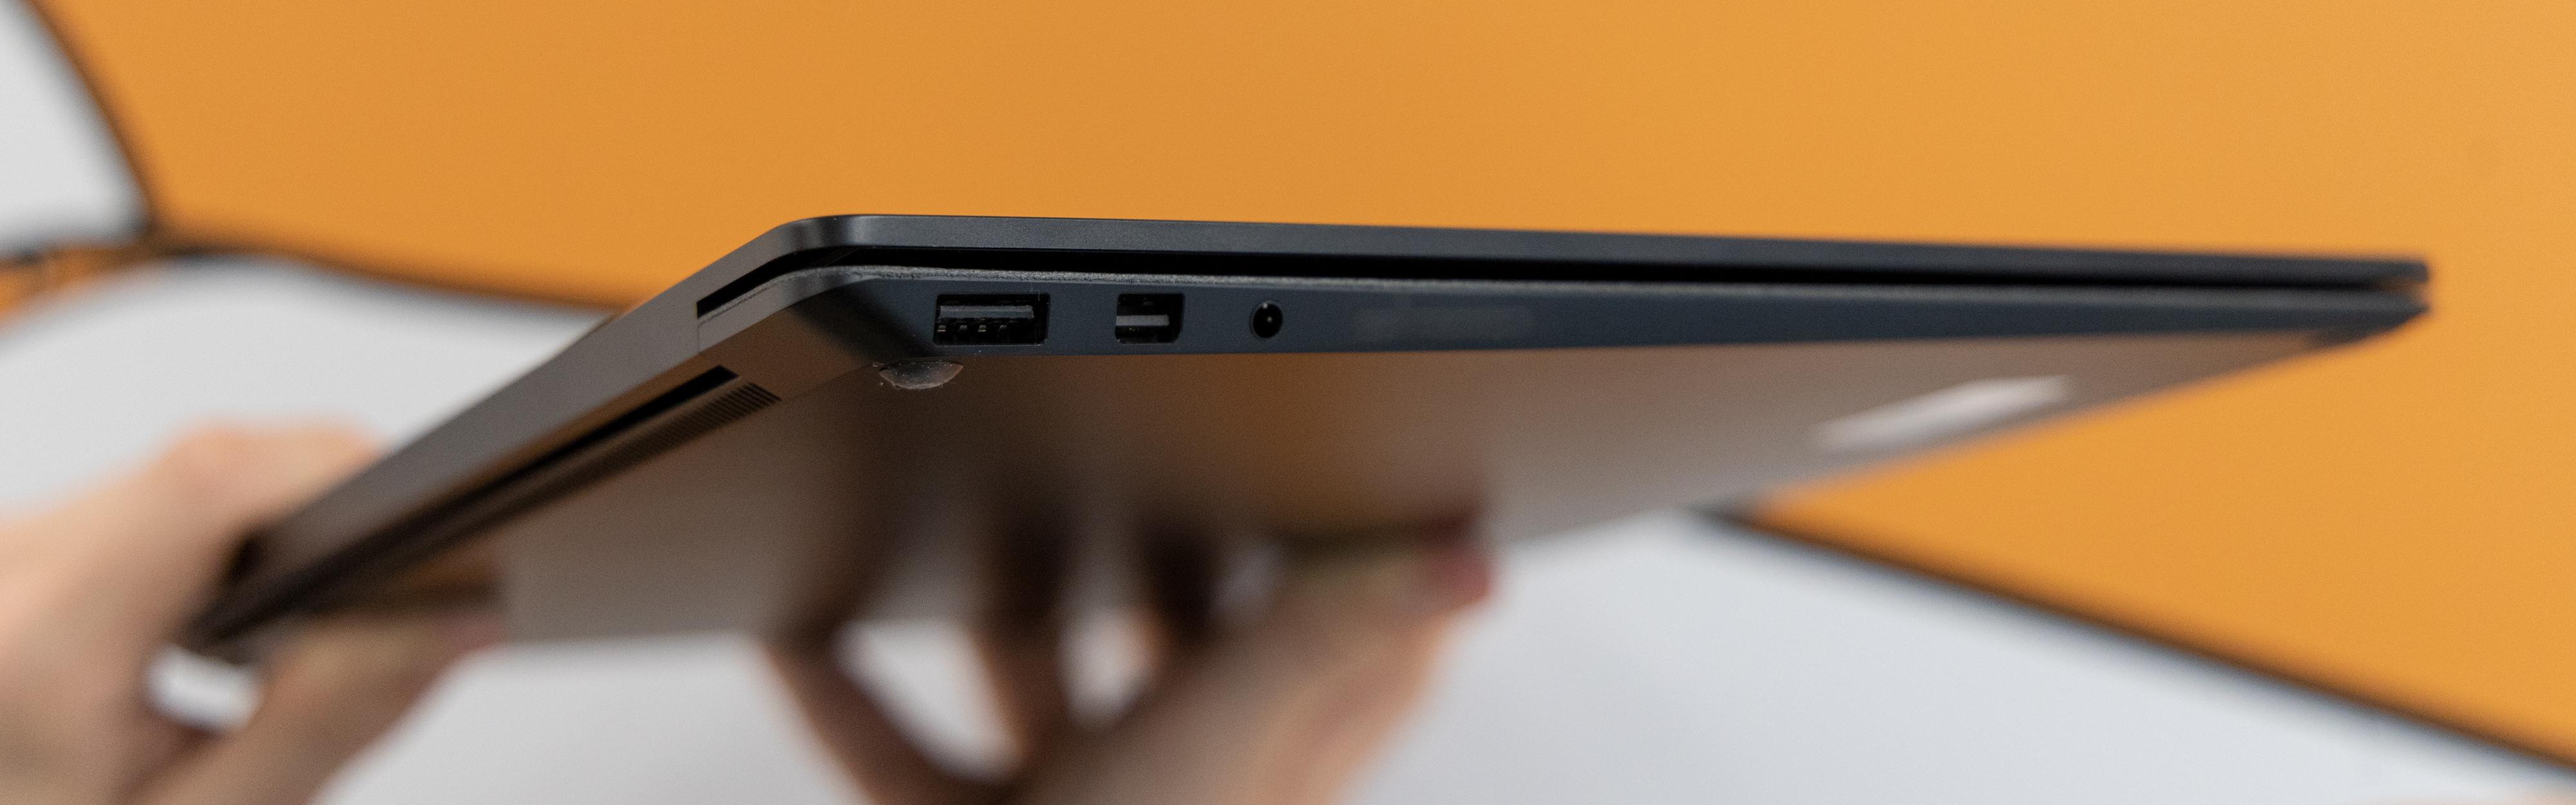 Hvorfor i all verden lanserer Microsoft en bærbar uten USB-C eller Thunderbolt 3 i 2019?